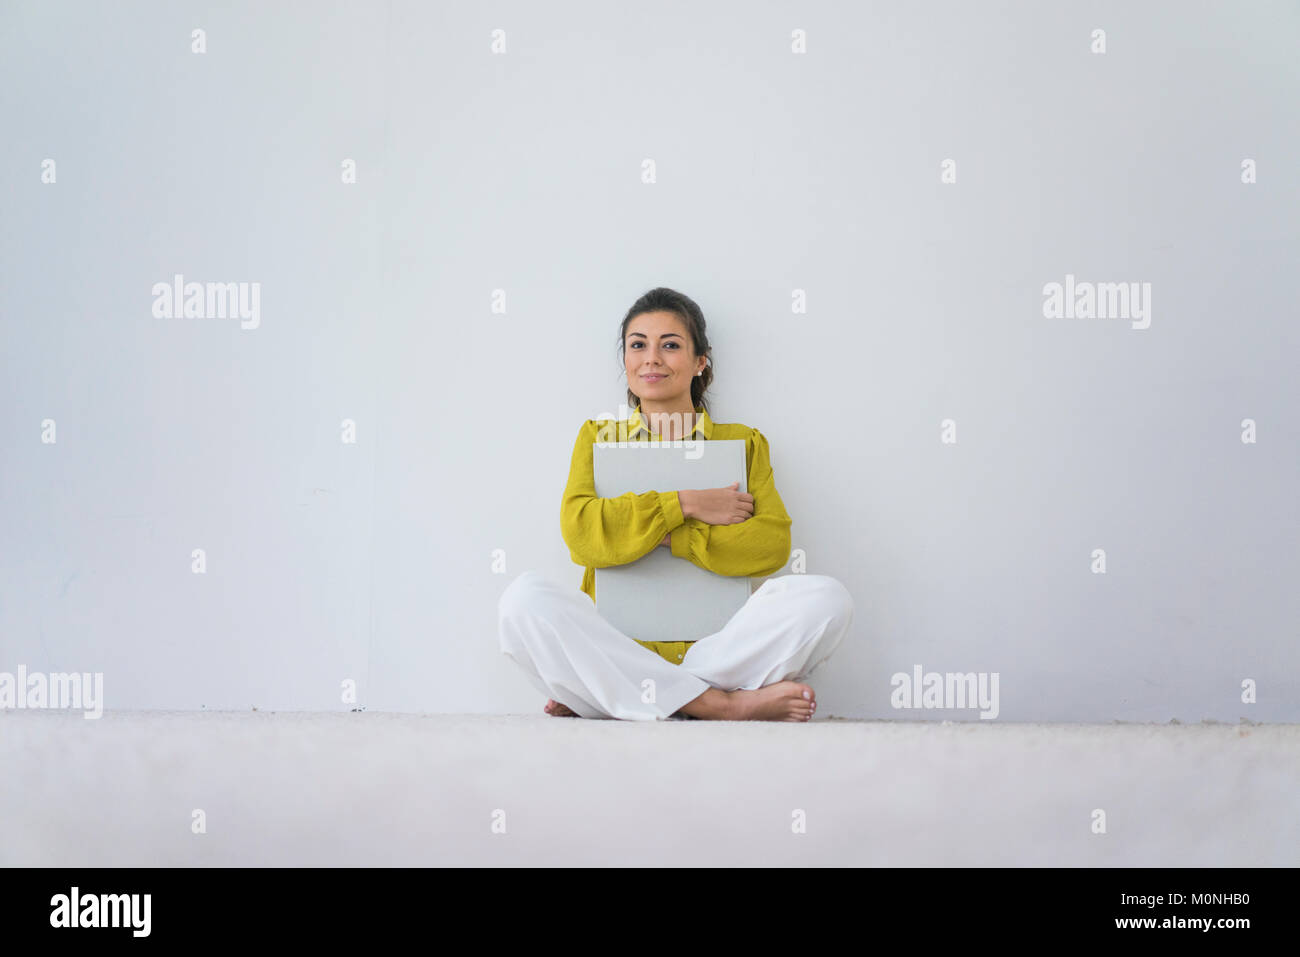 Ritratto di donna sorridente con grandi libro seduti sul pavimento Foto Stock